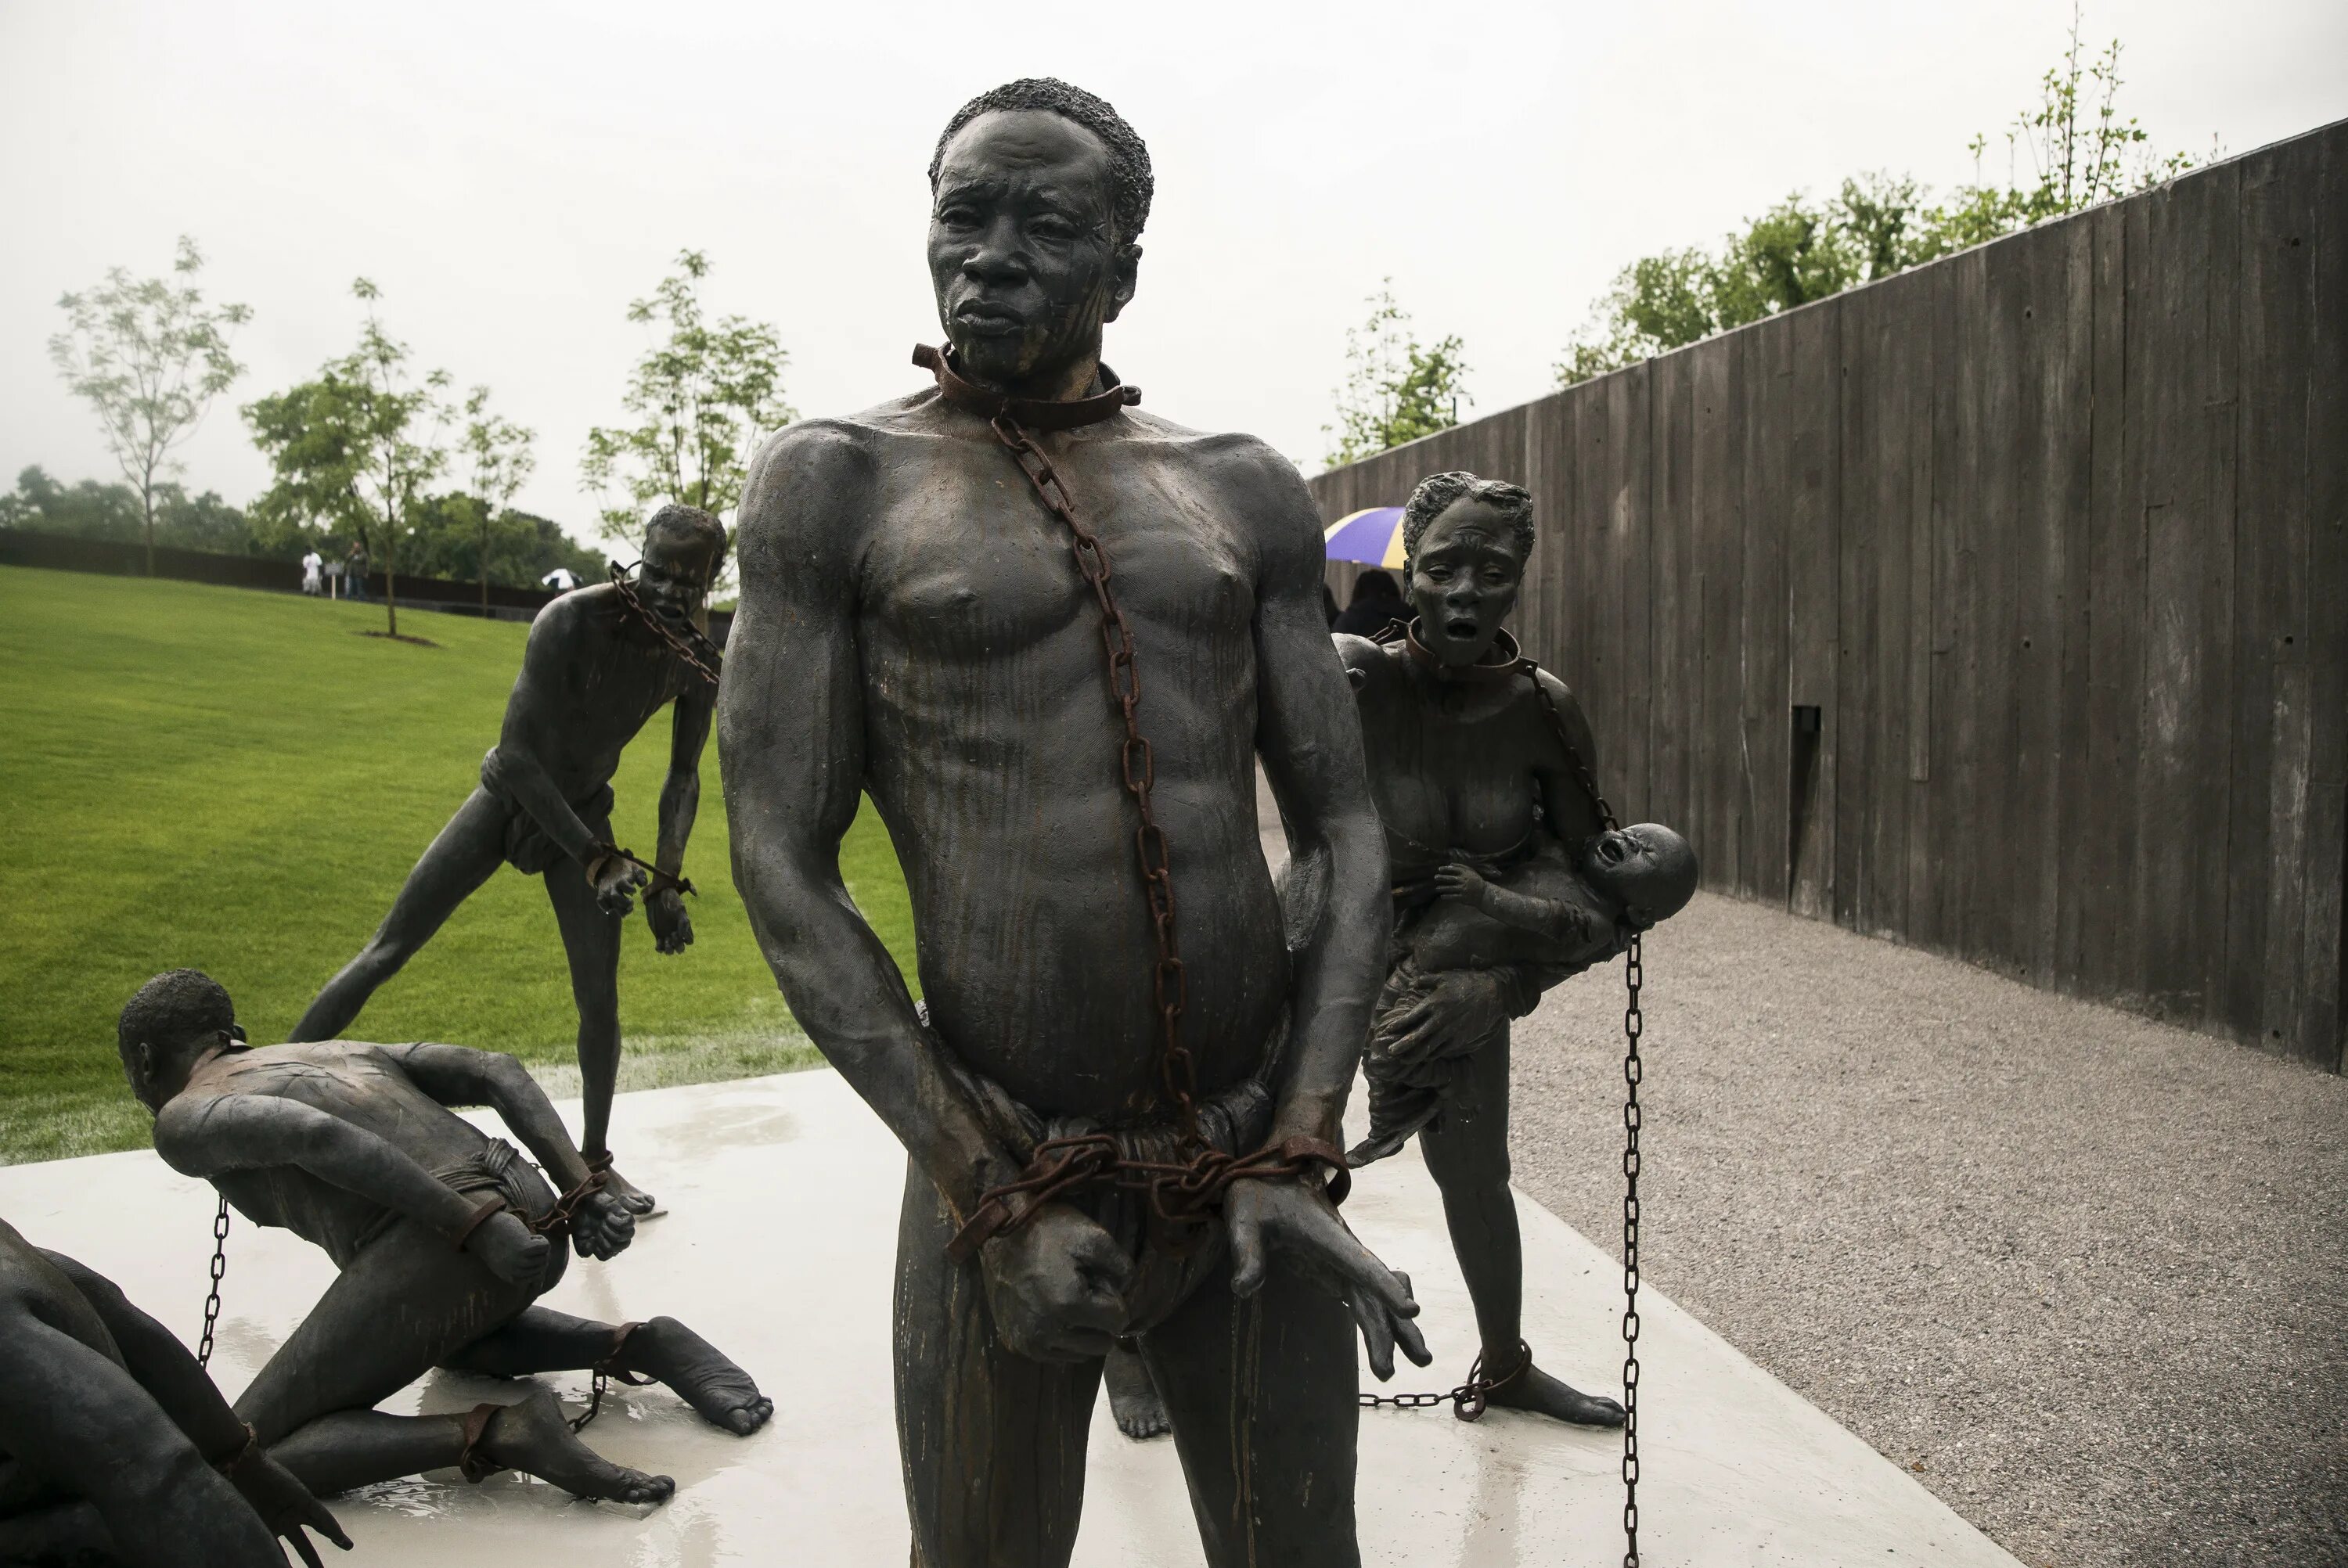 Мемориал жертвам линчеваний в Монтгомери. Статуя негра. Памятник негру. Презирали рабов